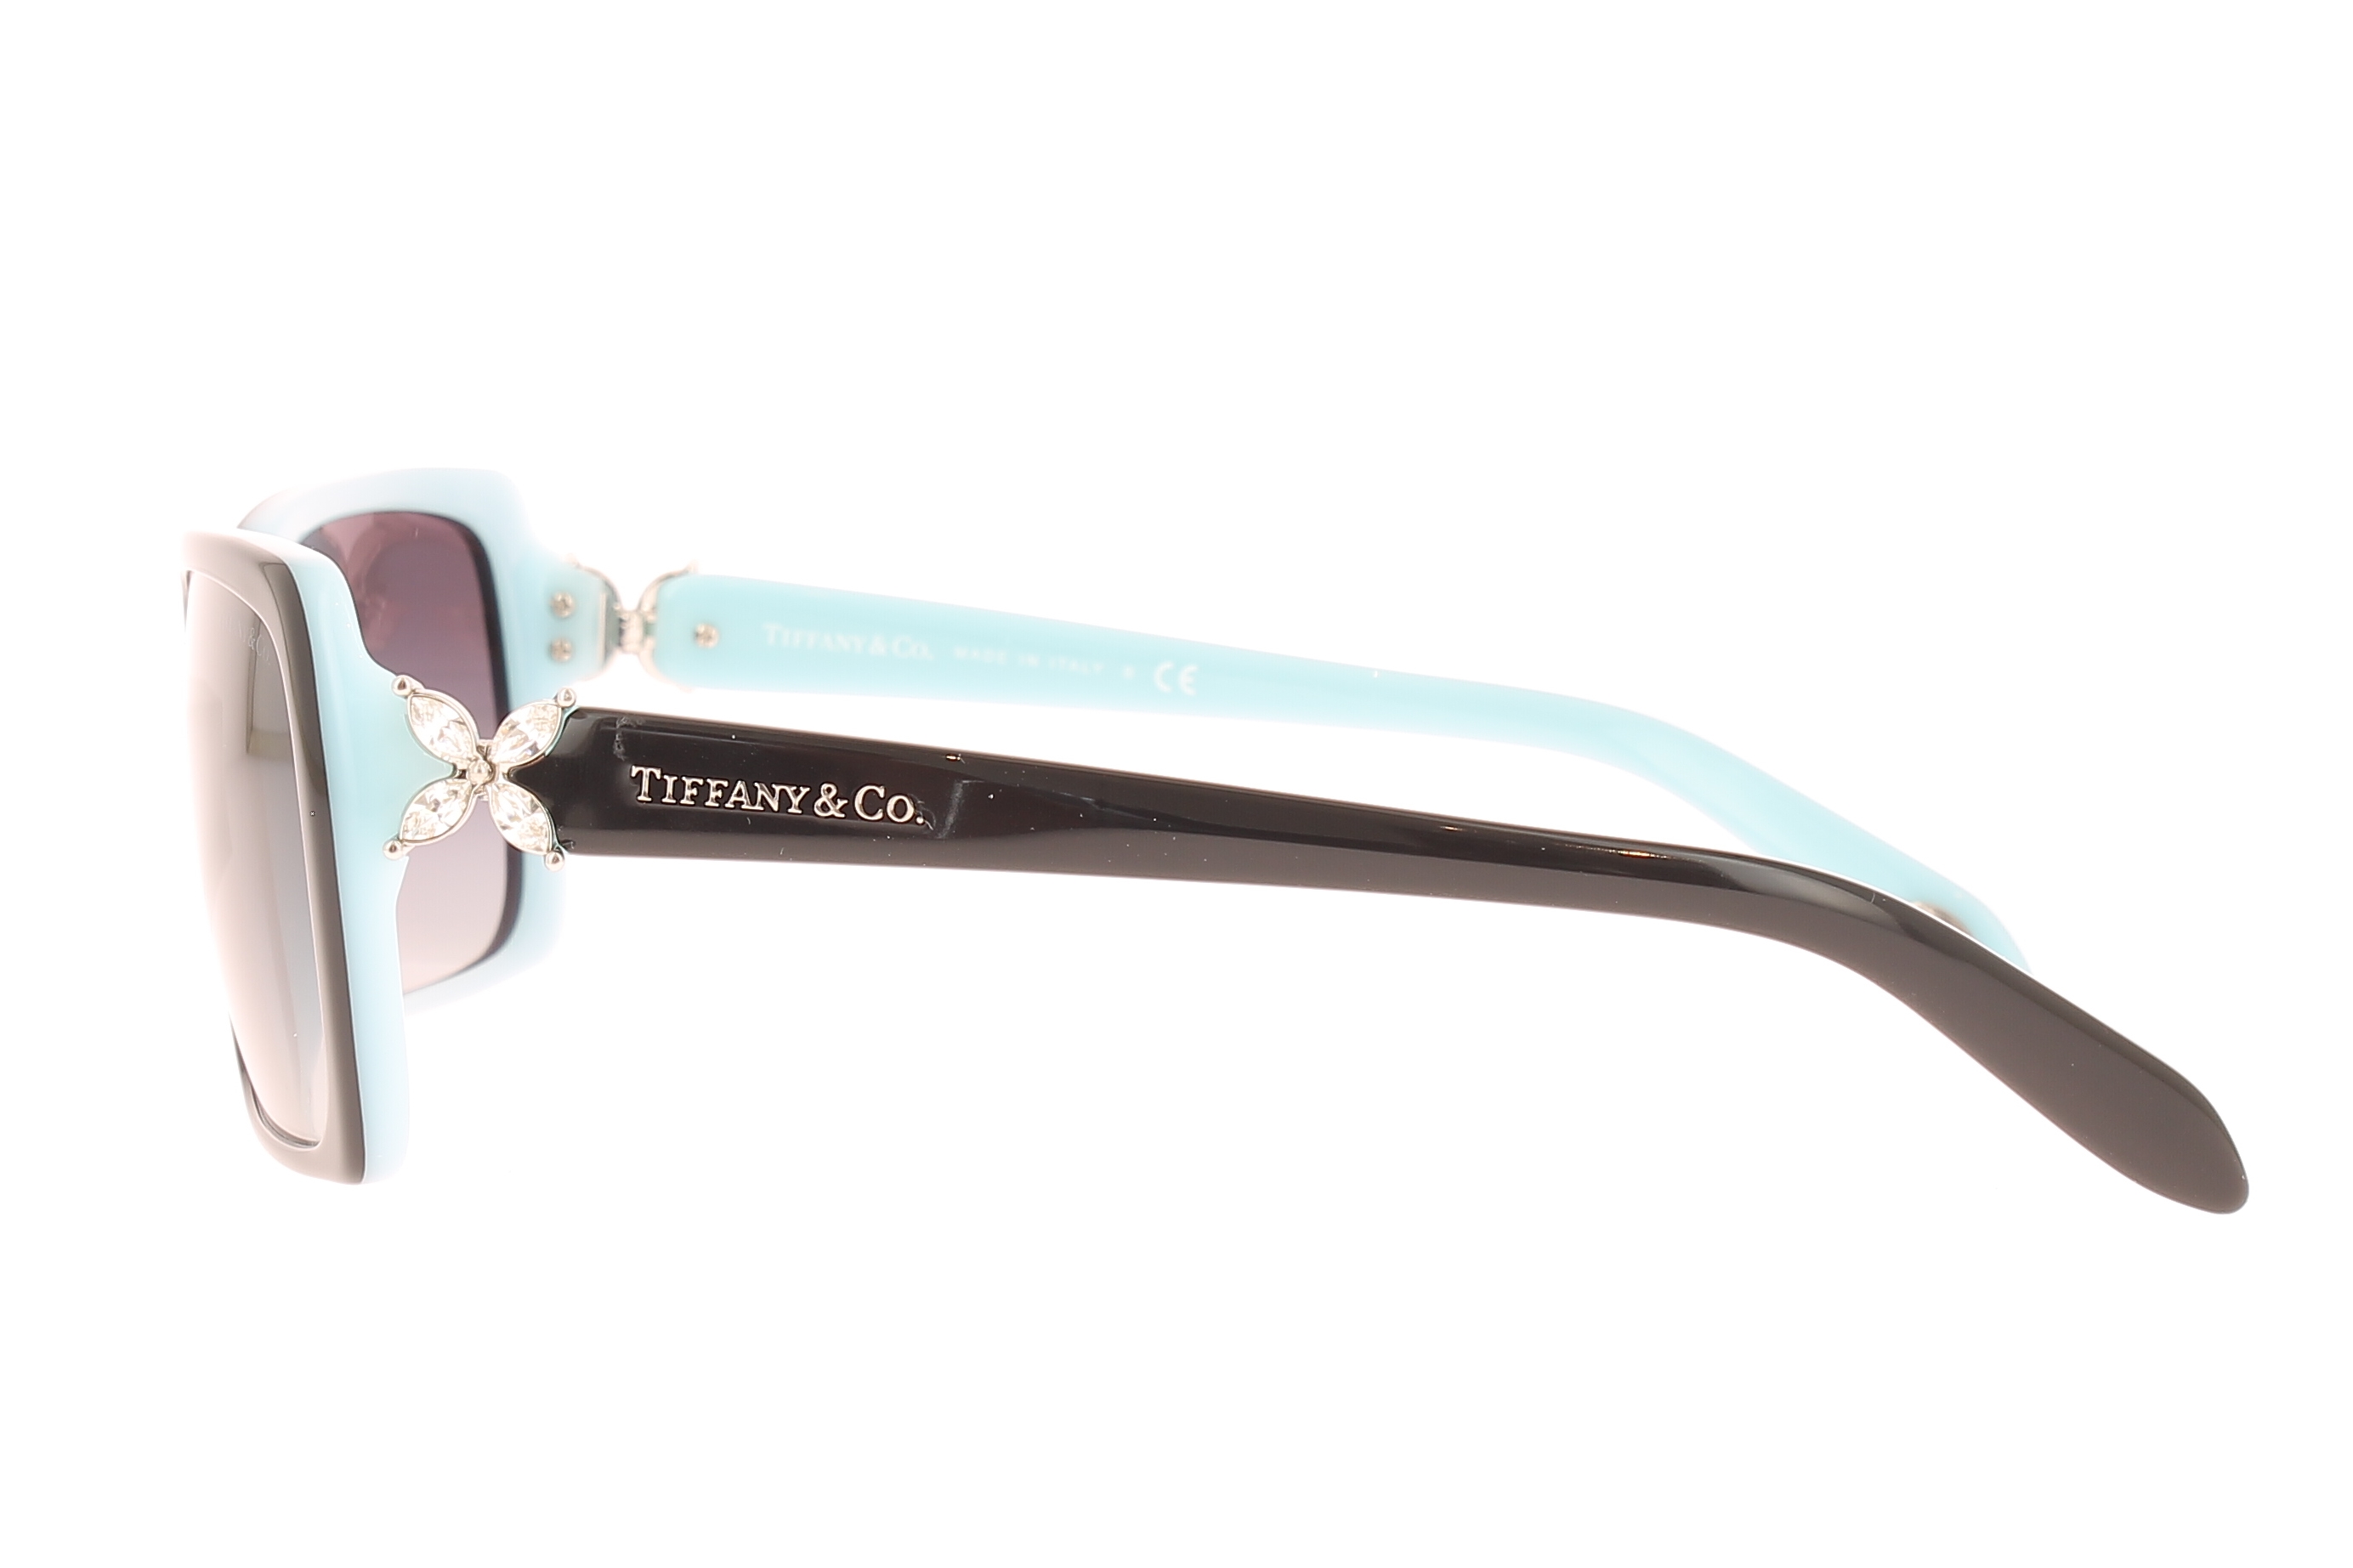 Paire de lunettes de soleil Tiffany-co Tf4047b /s couleur noir - Côté droit - Doyle